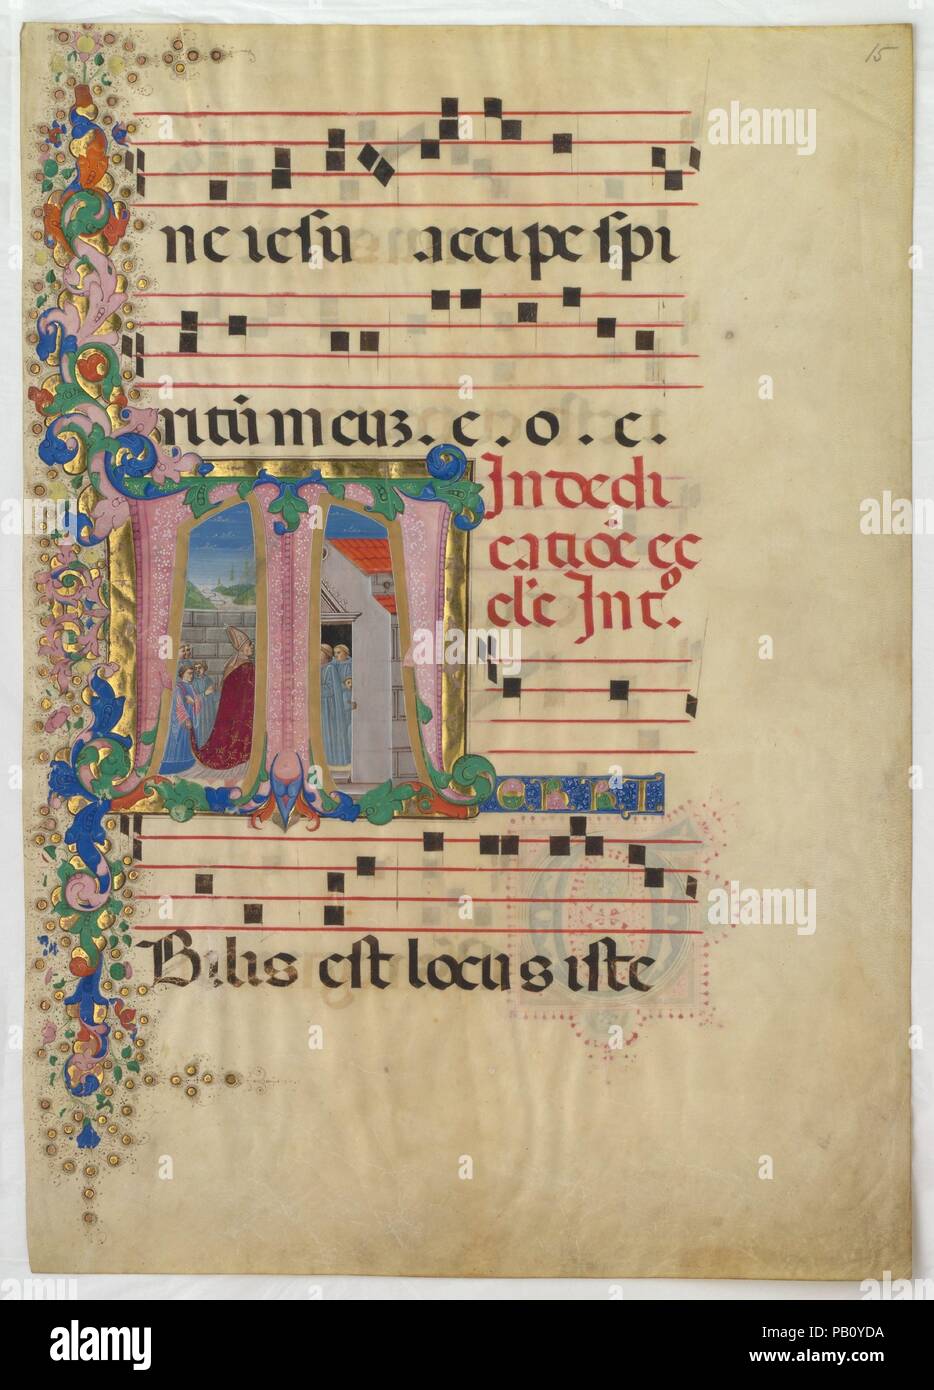 Hoja del manuscrito con la dedicación de una iglesia en un primer T, de una  gradual. Artista: Mariano del Buono (Italiano, 1433-1504). Cultura:  italiano. Dimensiones: total: 28 3/16 x 20 pulg. (71,6